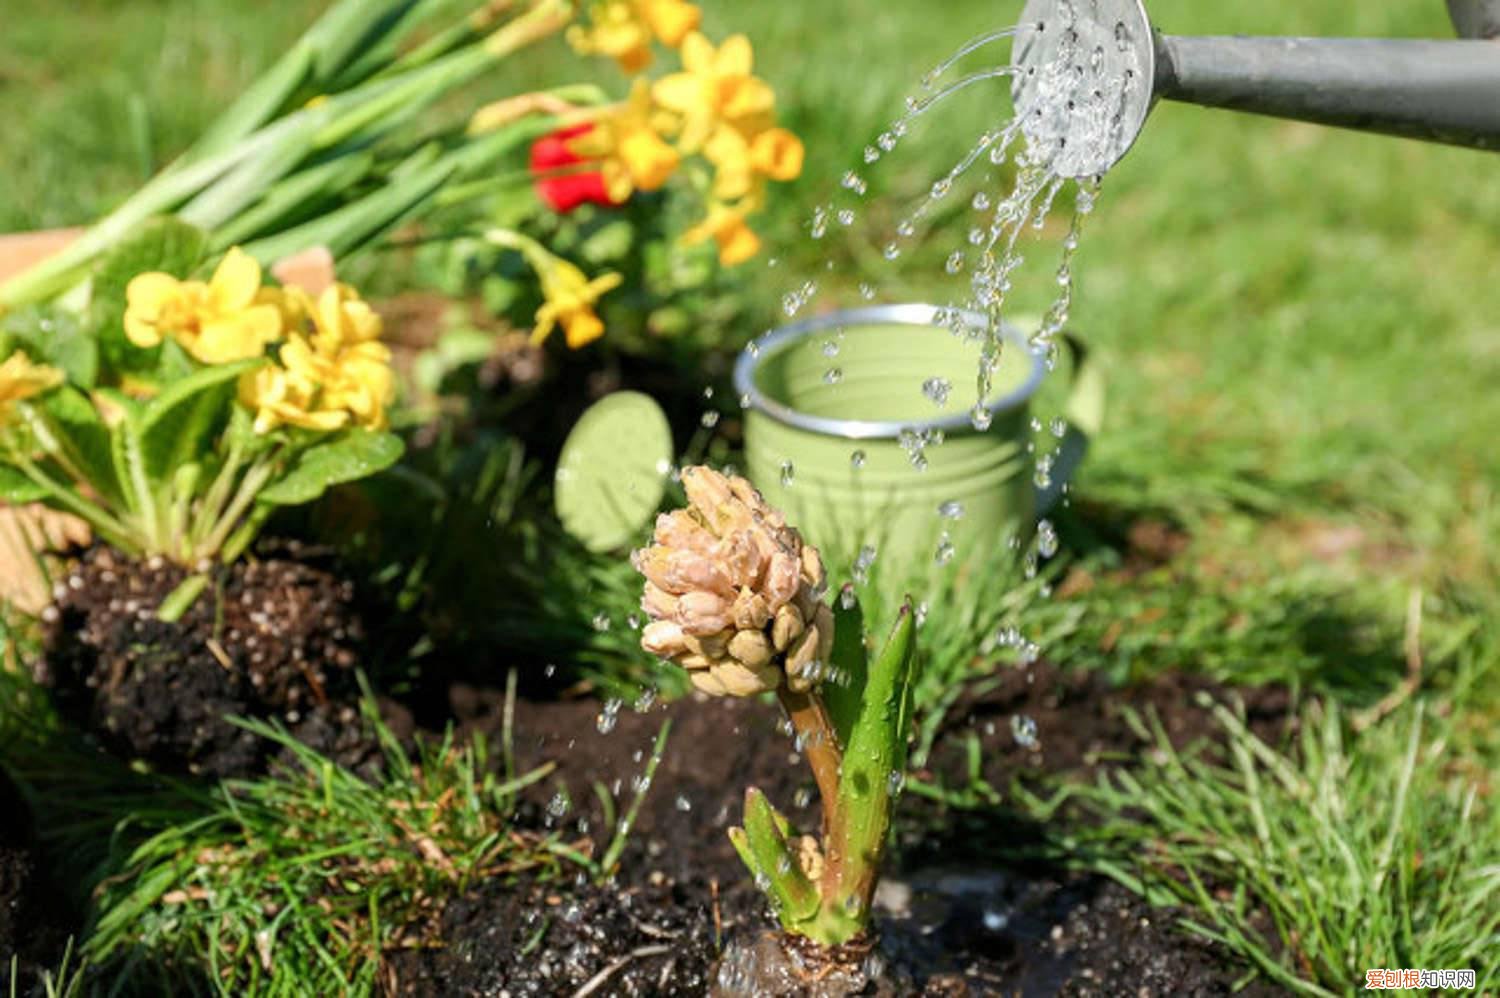 万能浇水神器,就是1根小吸管,专治烂根黄叶的植物 万能浇水神器，就是1根小吸管，专治烂根黄叶！